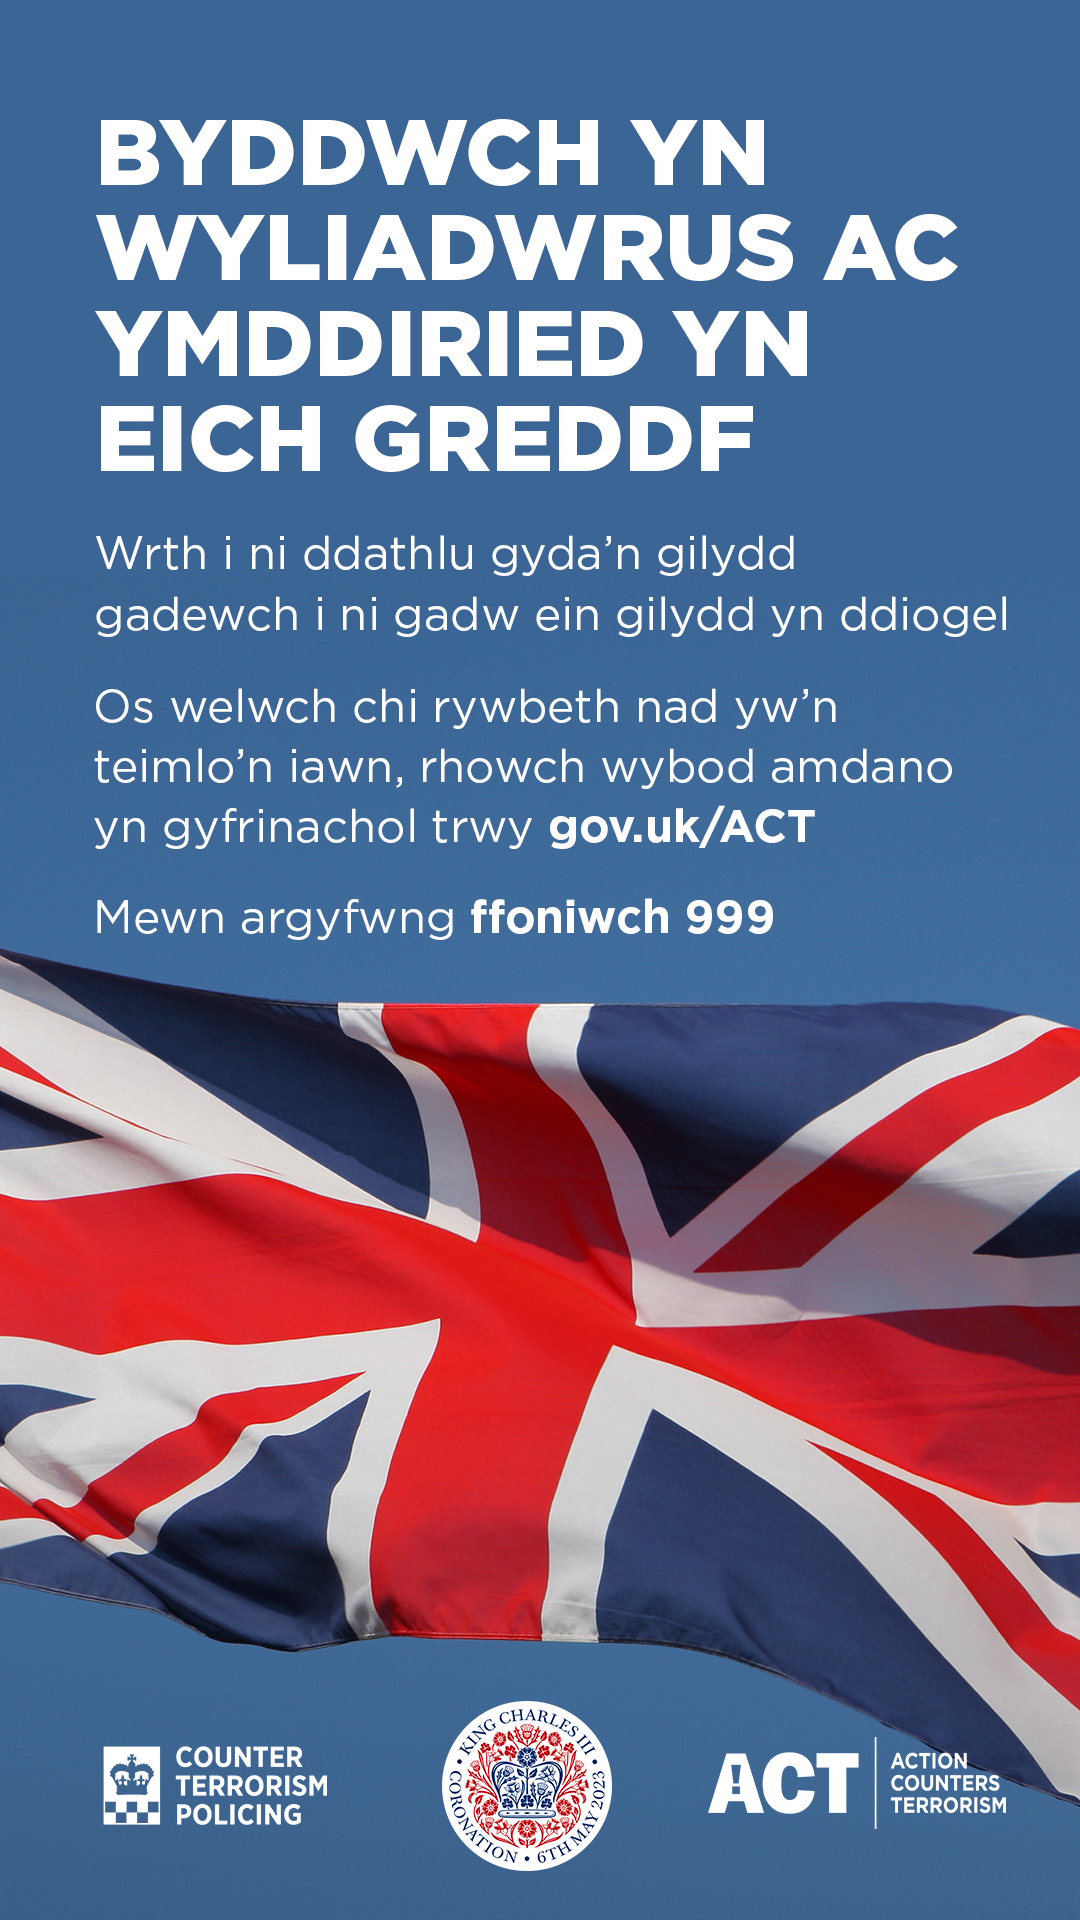 12 second Flag Vigilance Image Welsh translation 